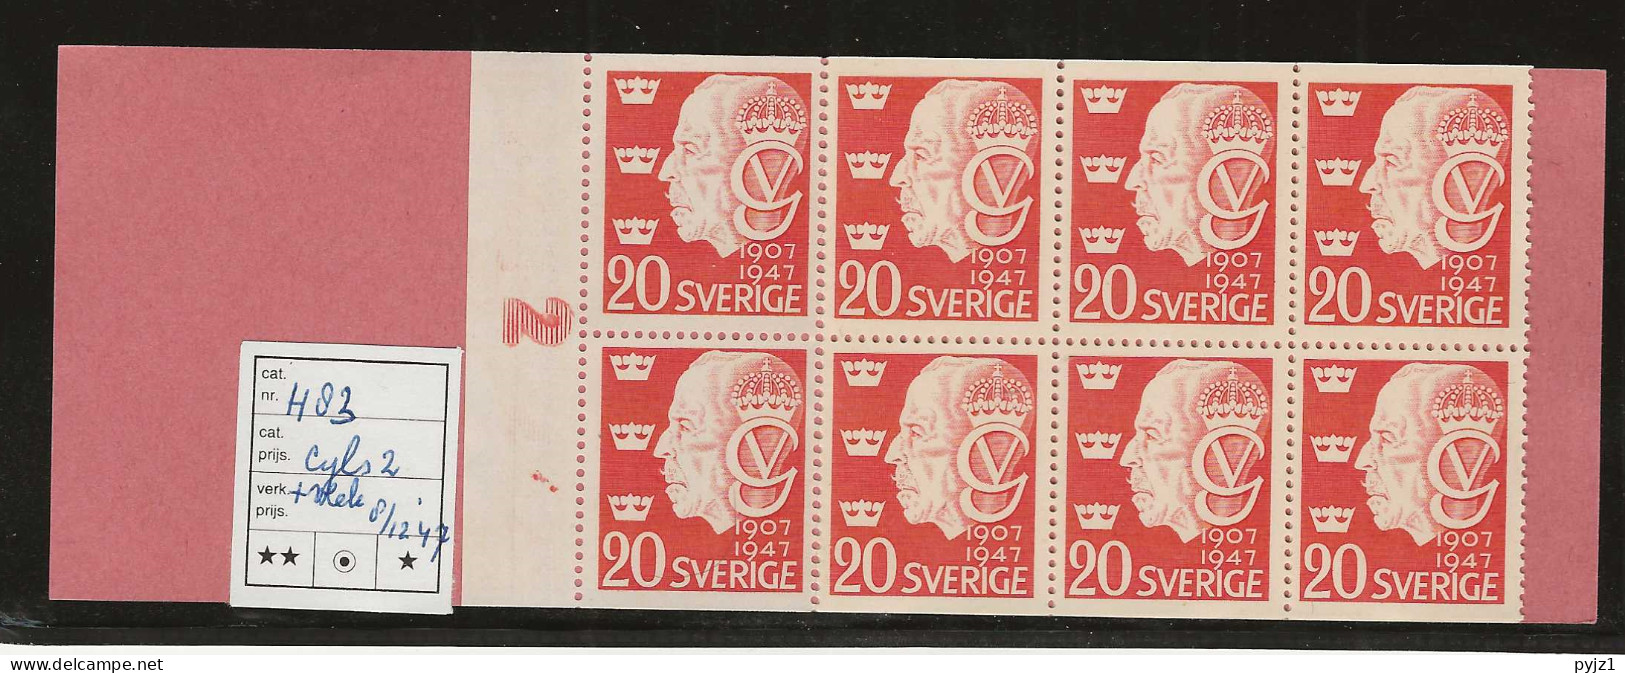 1947 MNH Sweden Booklet Facit H83 Cyls 2 Postfris** - 1904-50